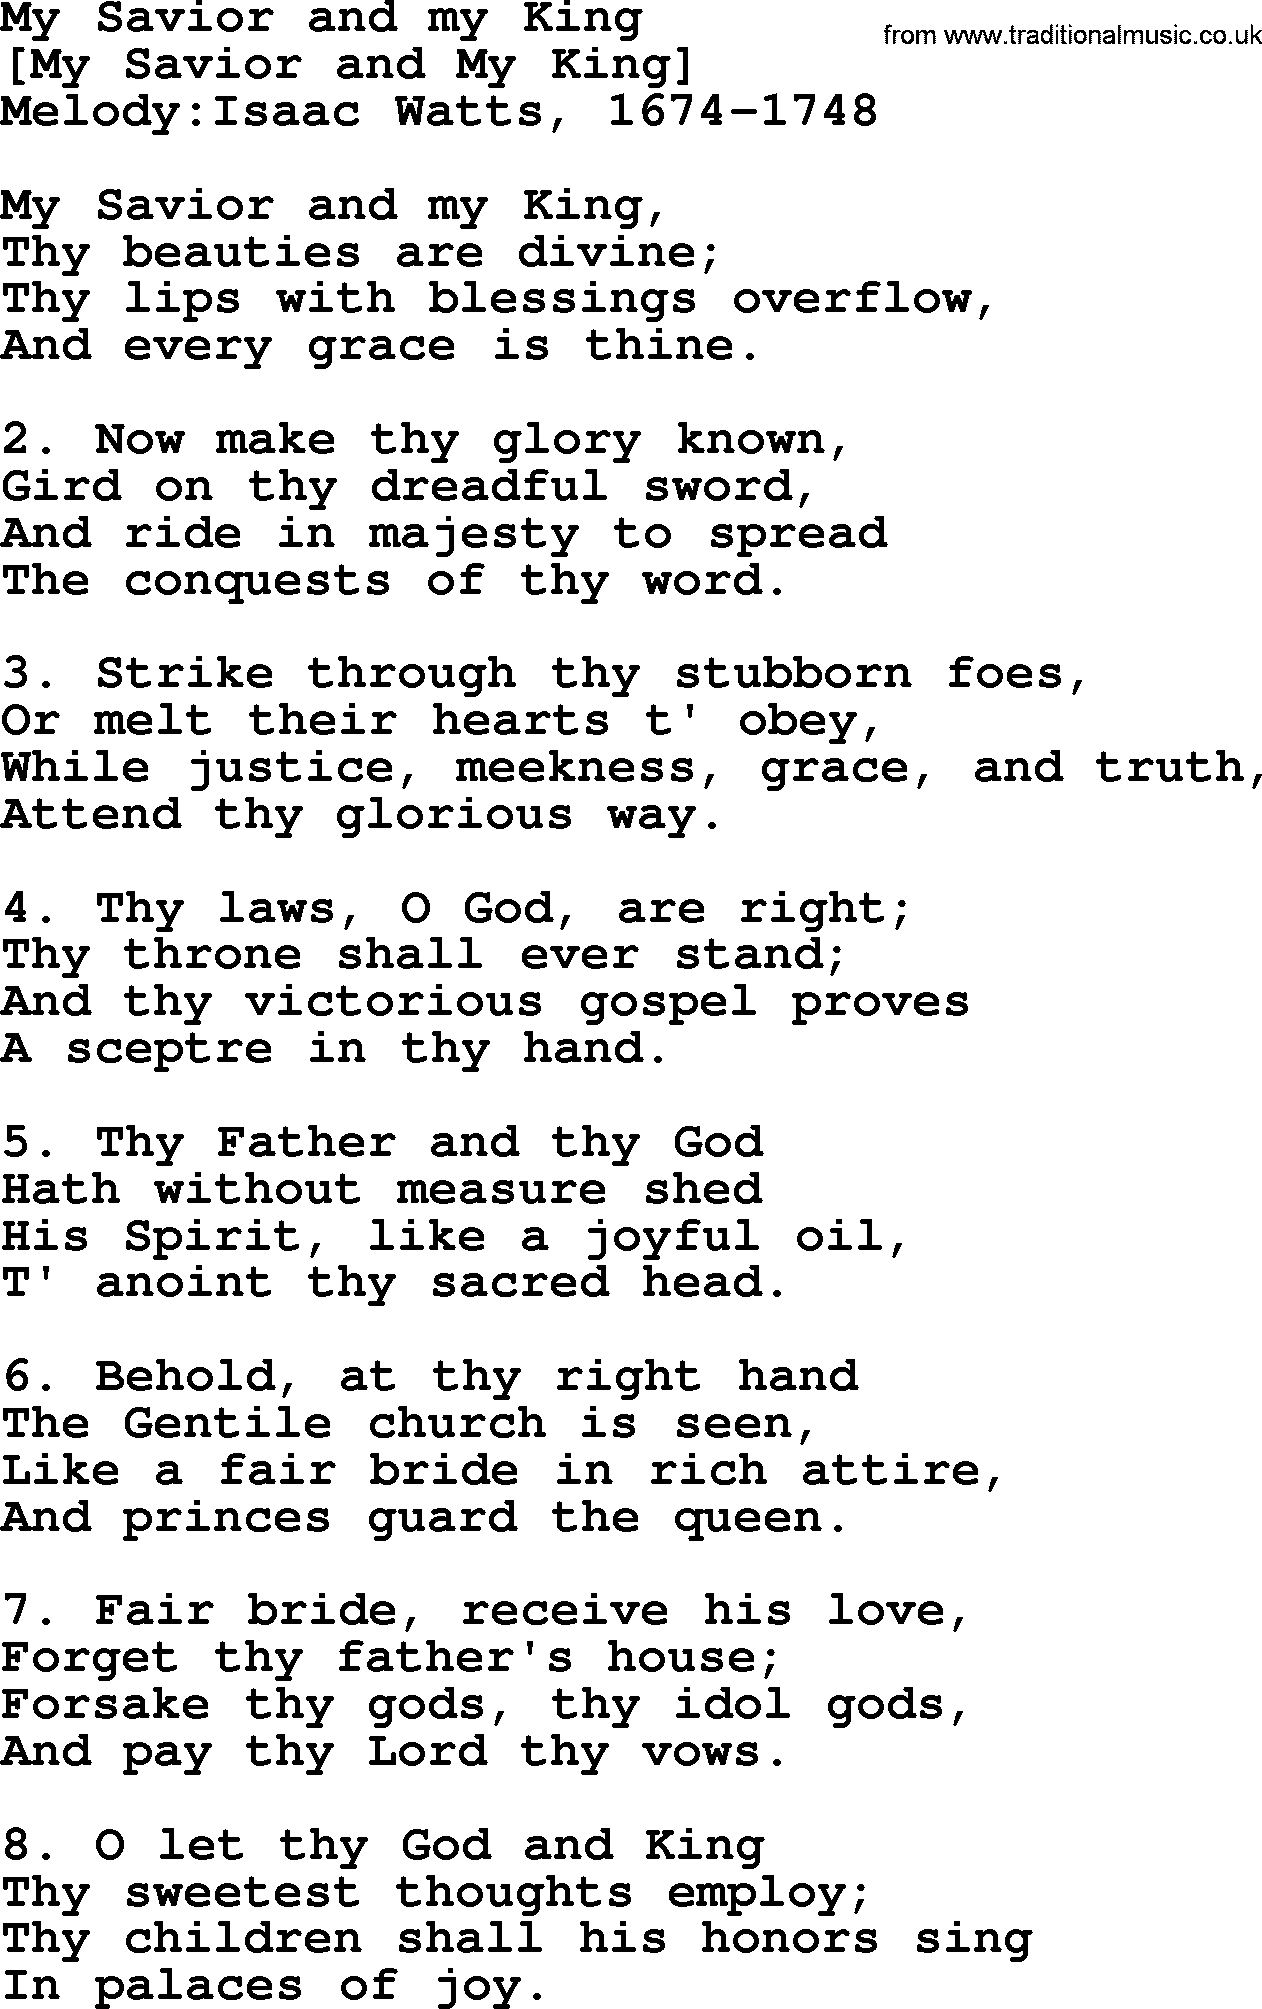 Old English Song: My Savior And My King lyrics